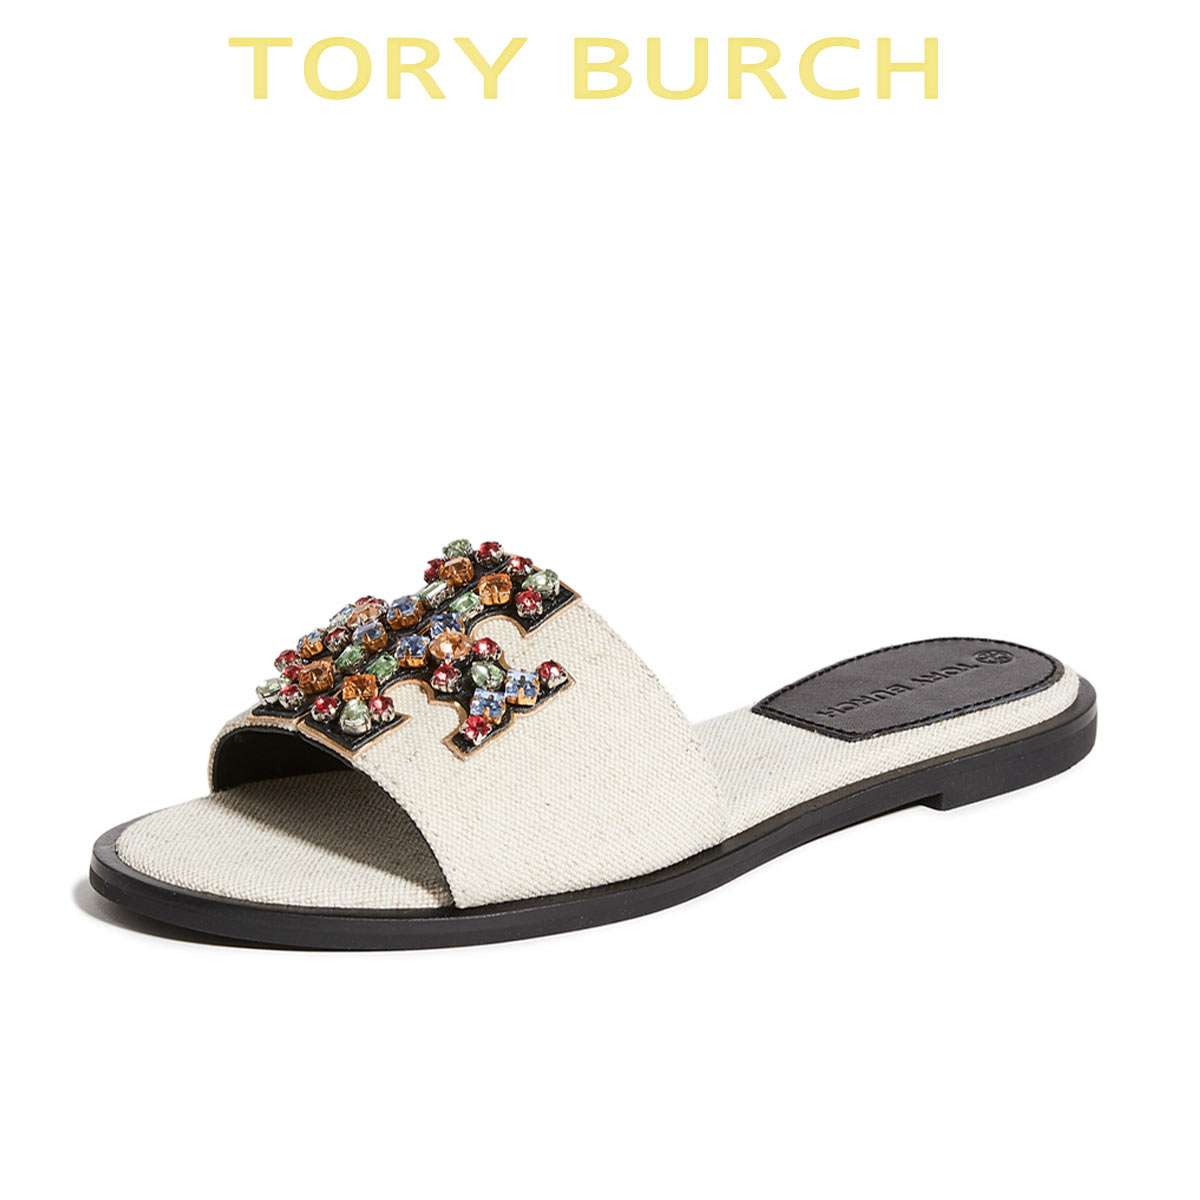 トリーバーチ サンダル 靴 レディース ぺたんこ 歩きやすい スリッポン ブランド かかとなし Tory Burch